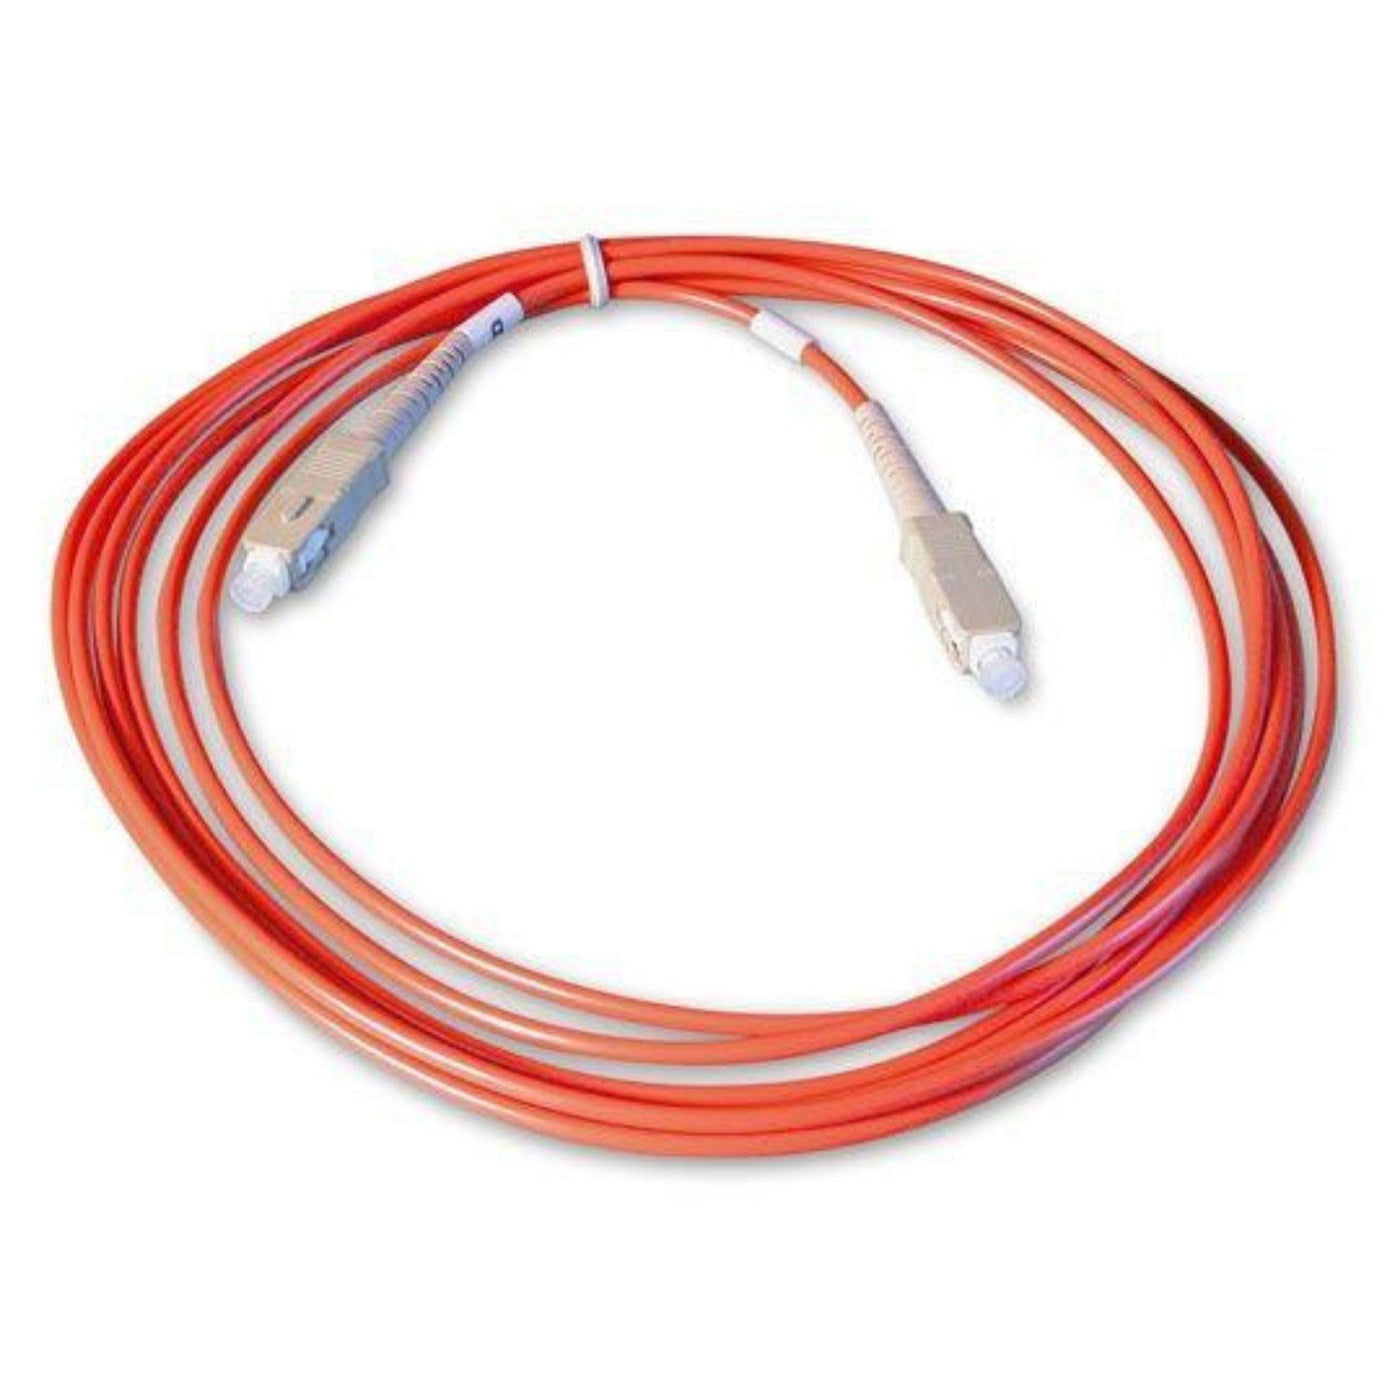 Alva MADI1S Optical Simplex Cable (1 Meter)